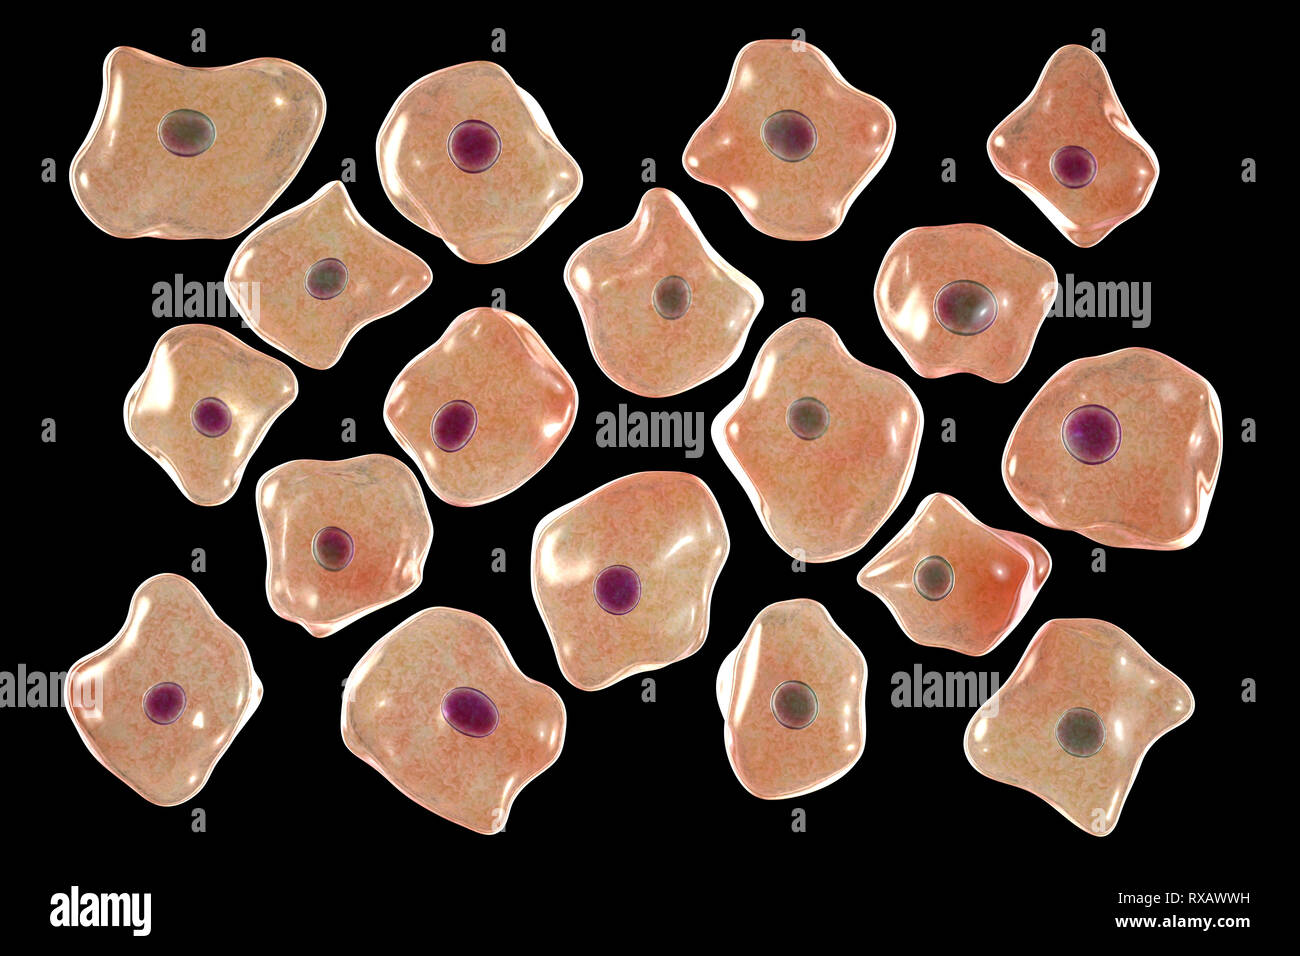 Squamous epithelium cells, illustration Stock Photo